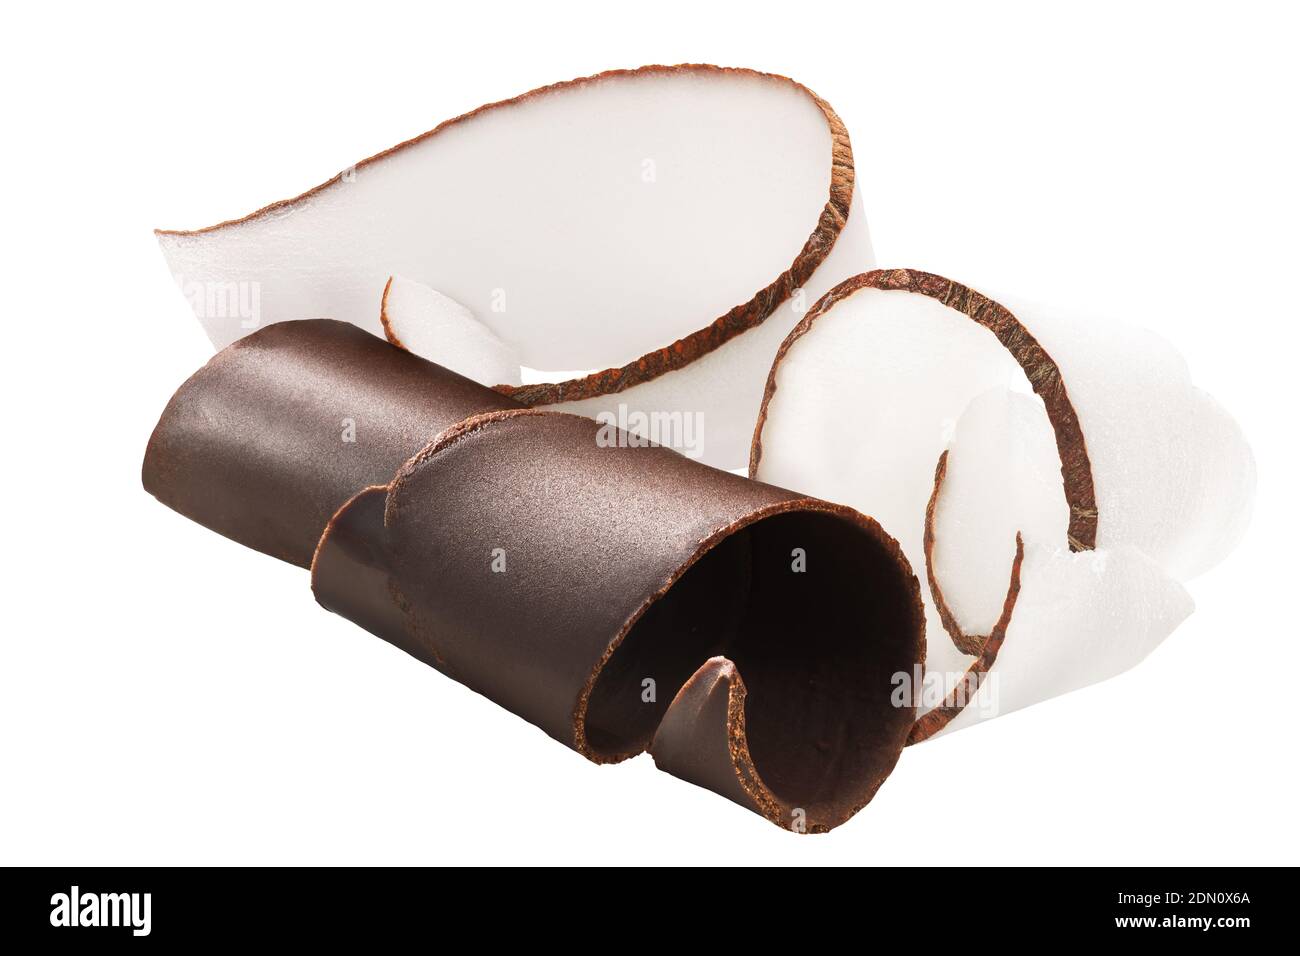 Schokolade und Kokosnussspäne oder zusammengerollte Locken isoliert Stockfoto